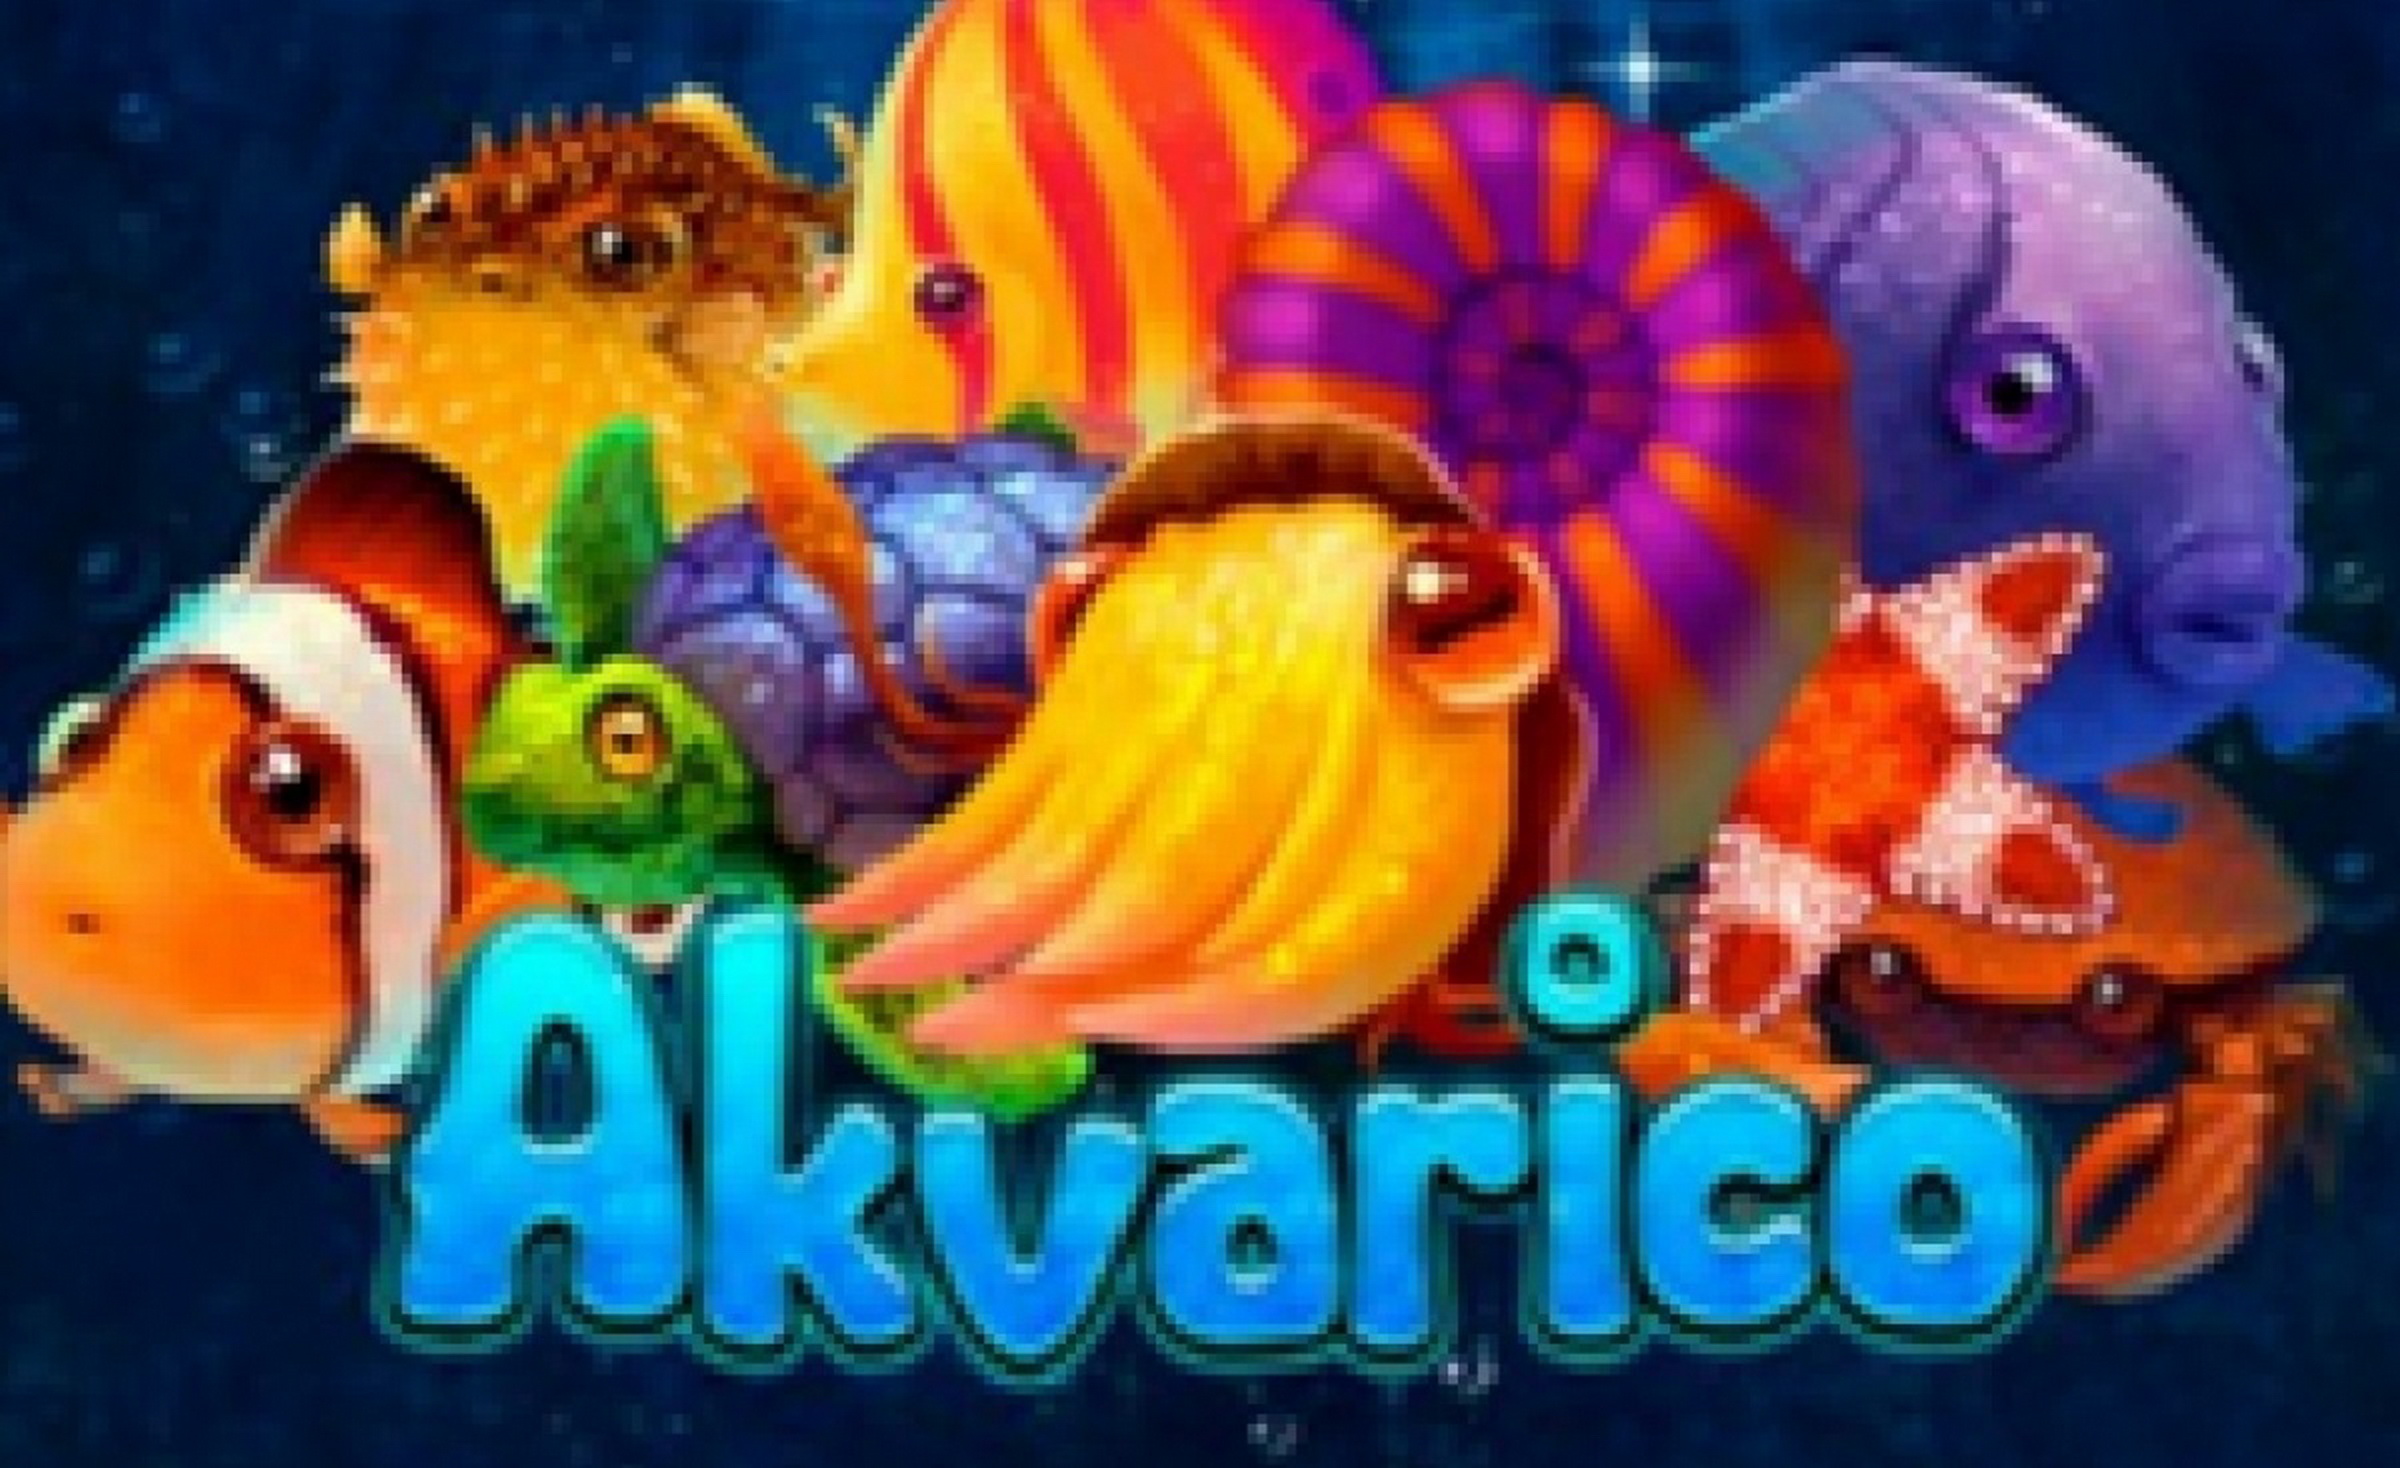 Akvarico